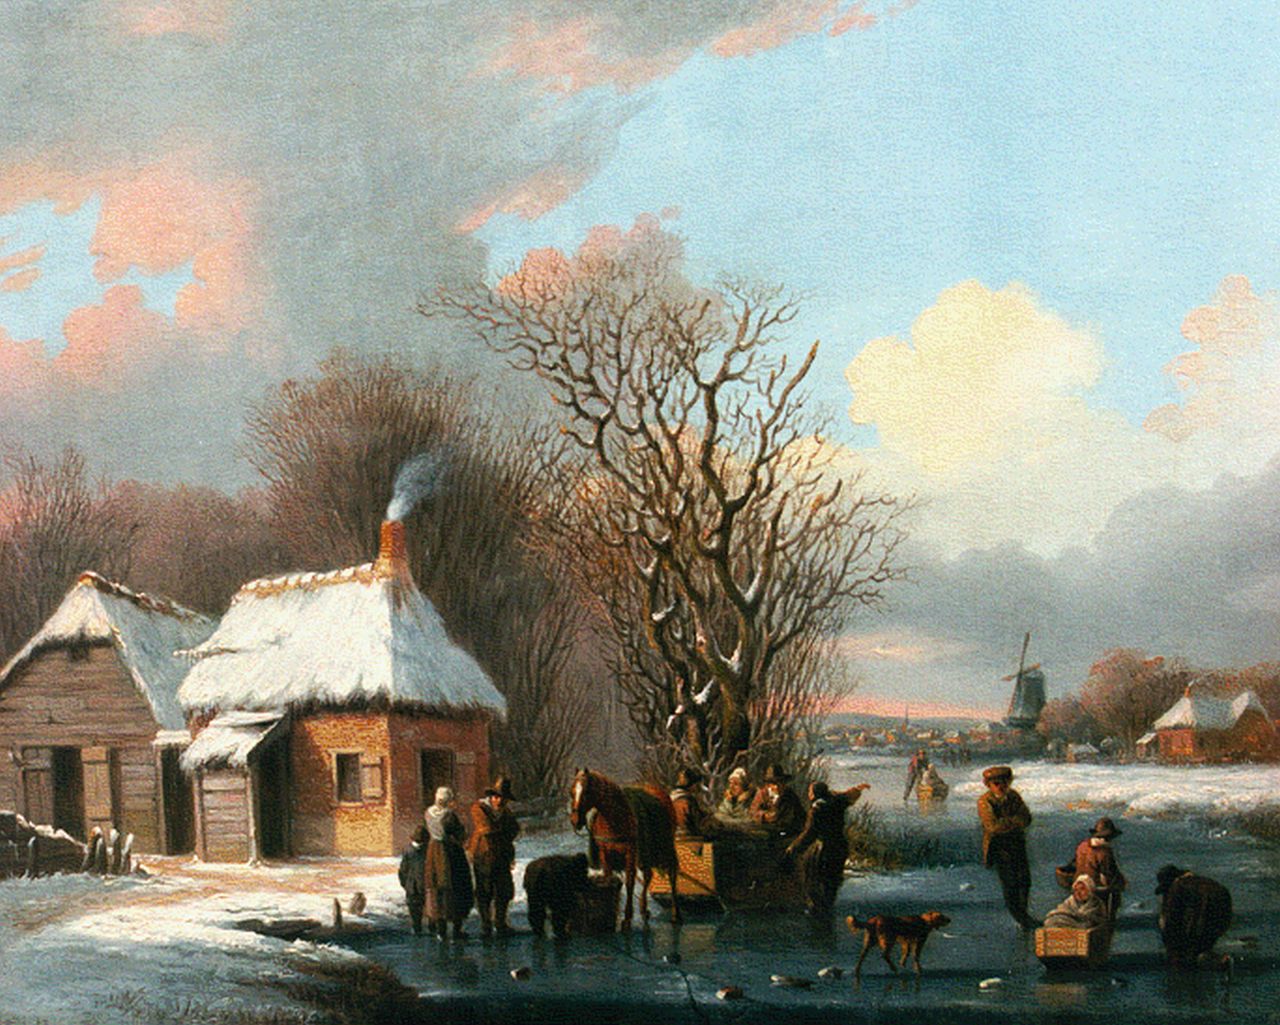 Stok J. van der | Jacobus van der Stok, Bedrijvigheid op bevroren vaart, olieverf op paneel 22,3 x 27,0 cm, gesigneerd op kar